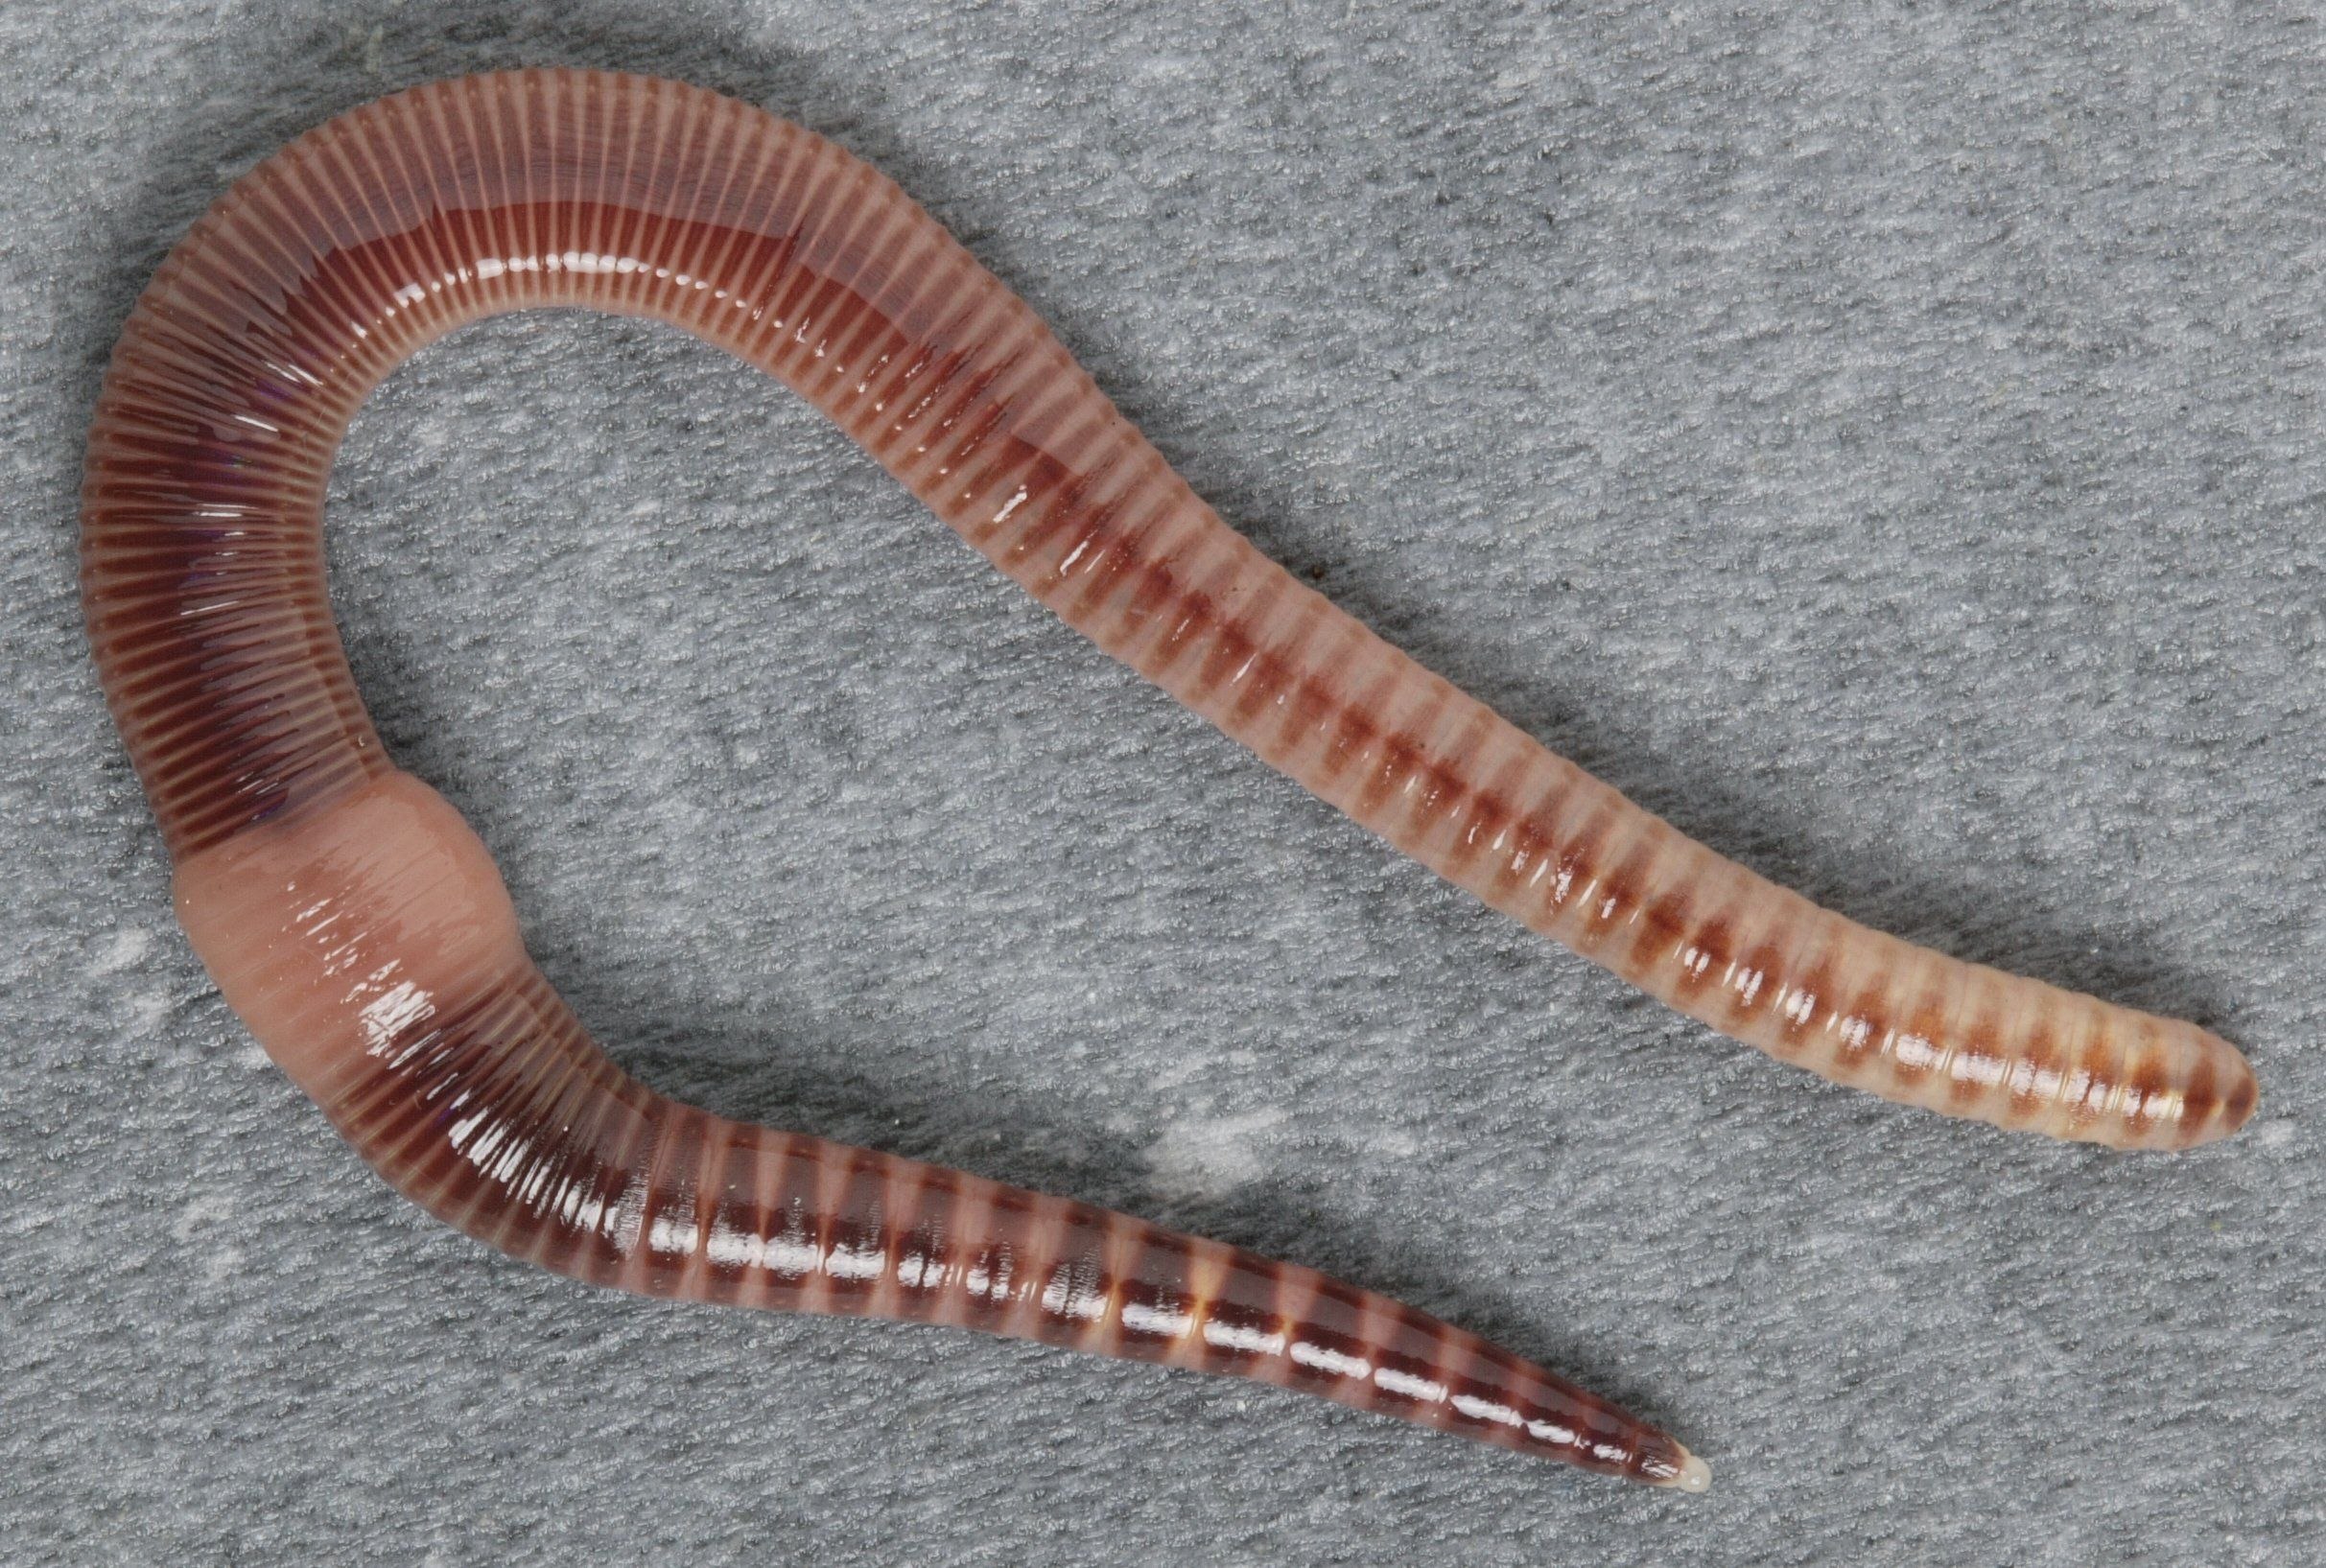 Активный червь. Малошетниковфй крльчатые черви. Малощетинковые кольчатые черви. Малощетинковые черви (дождевой червь). Oligochaeta (Малощетинковые черви).